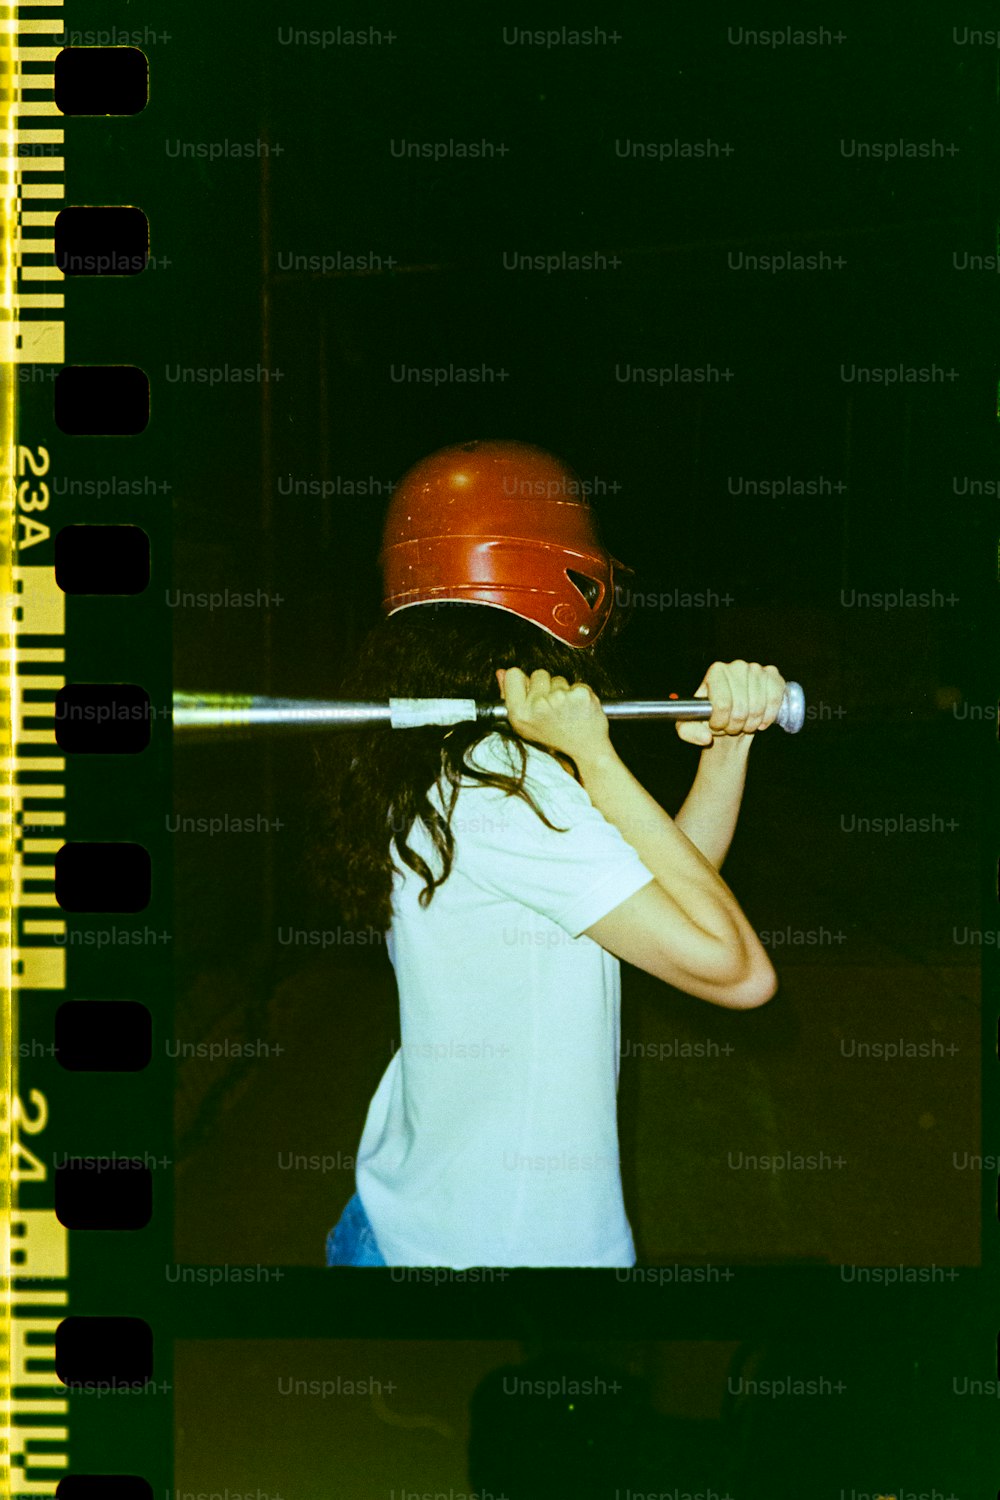 ein Mädchen mit Helm hält einen Baseballschläger in der Hand